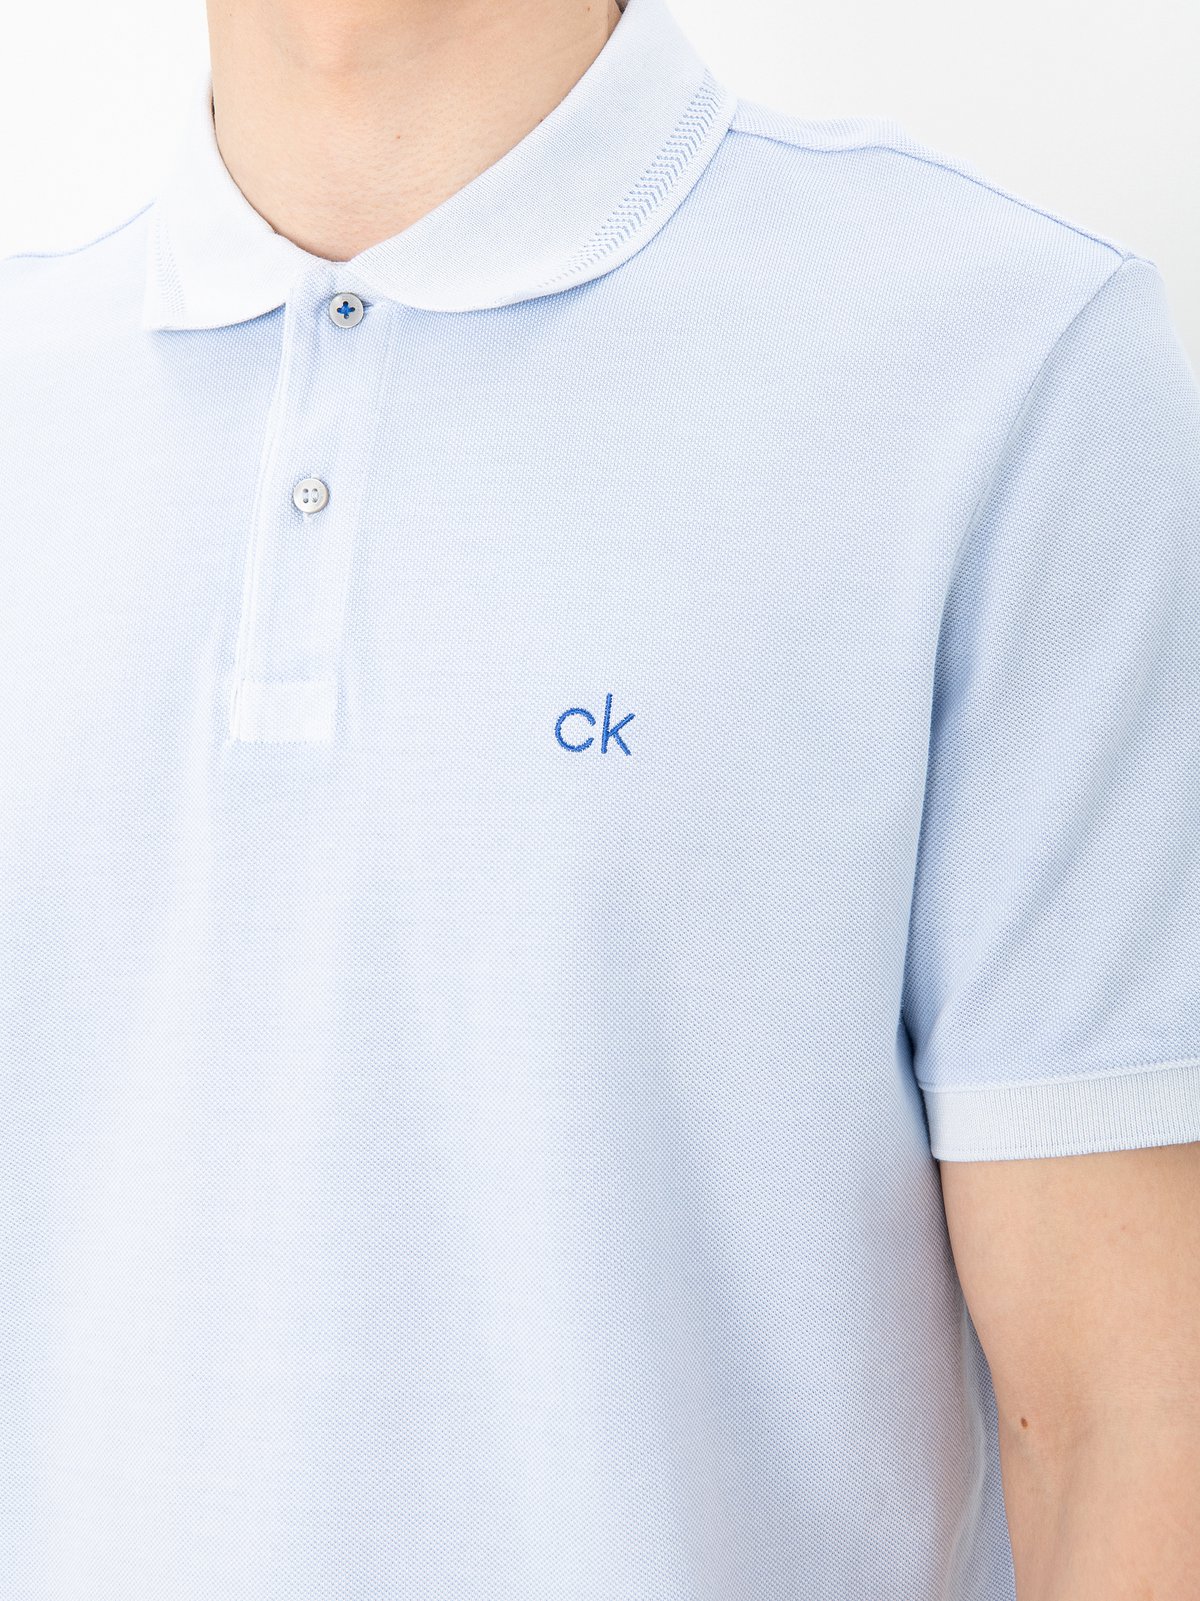 c1n shirt